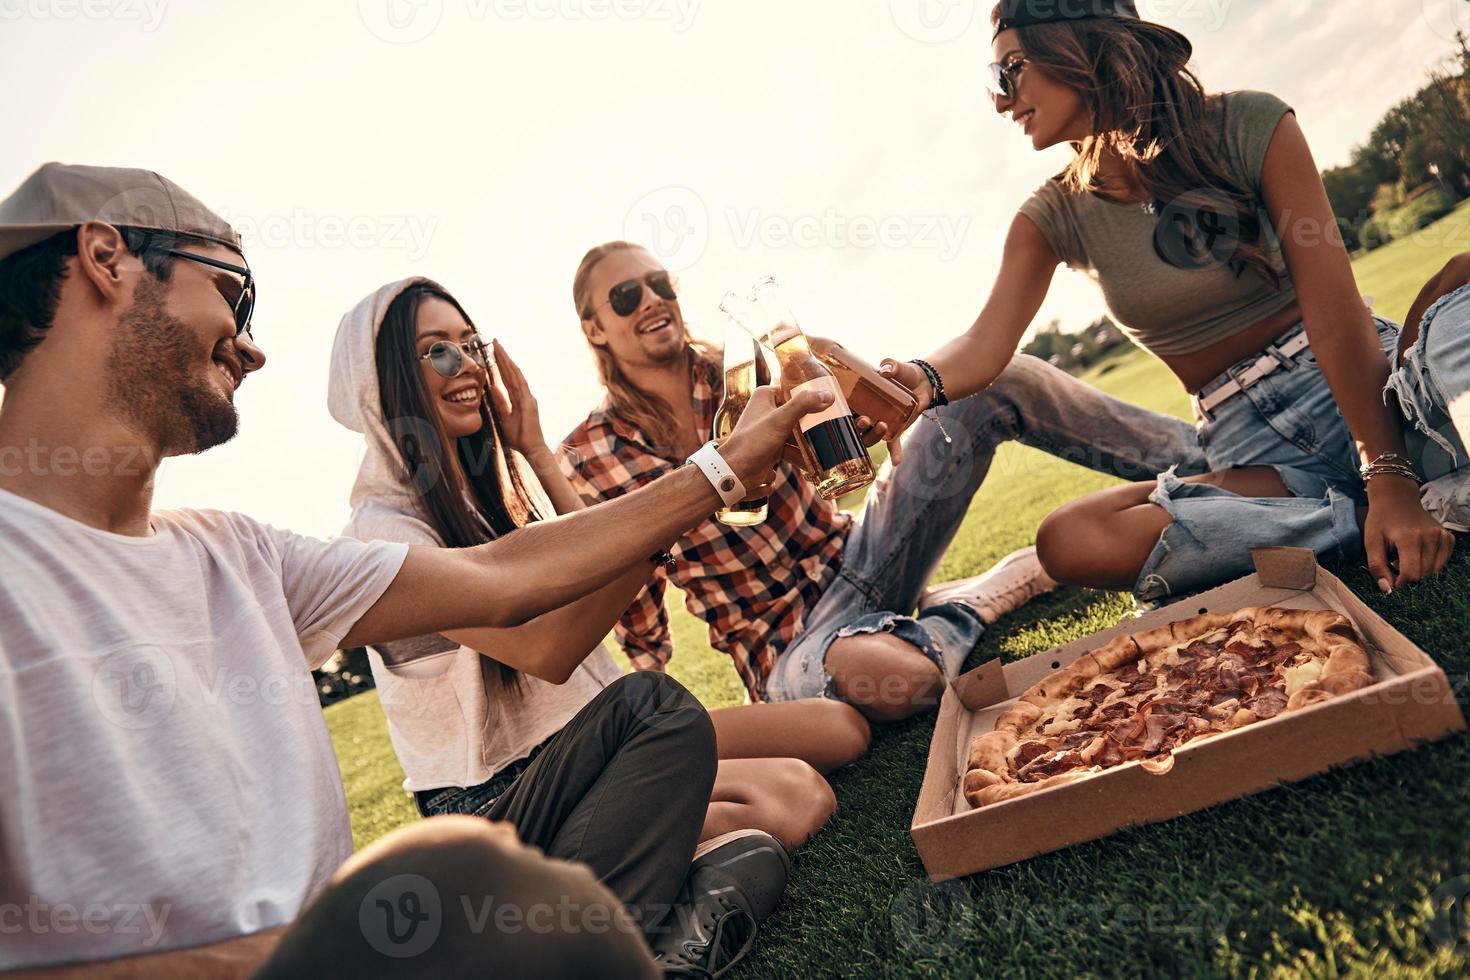 joven y despreocupado. grupo de personas sonrientes con ropa informal brindando con botellas de cerveza mientras disfrutan de un picnic al aire libre foto